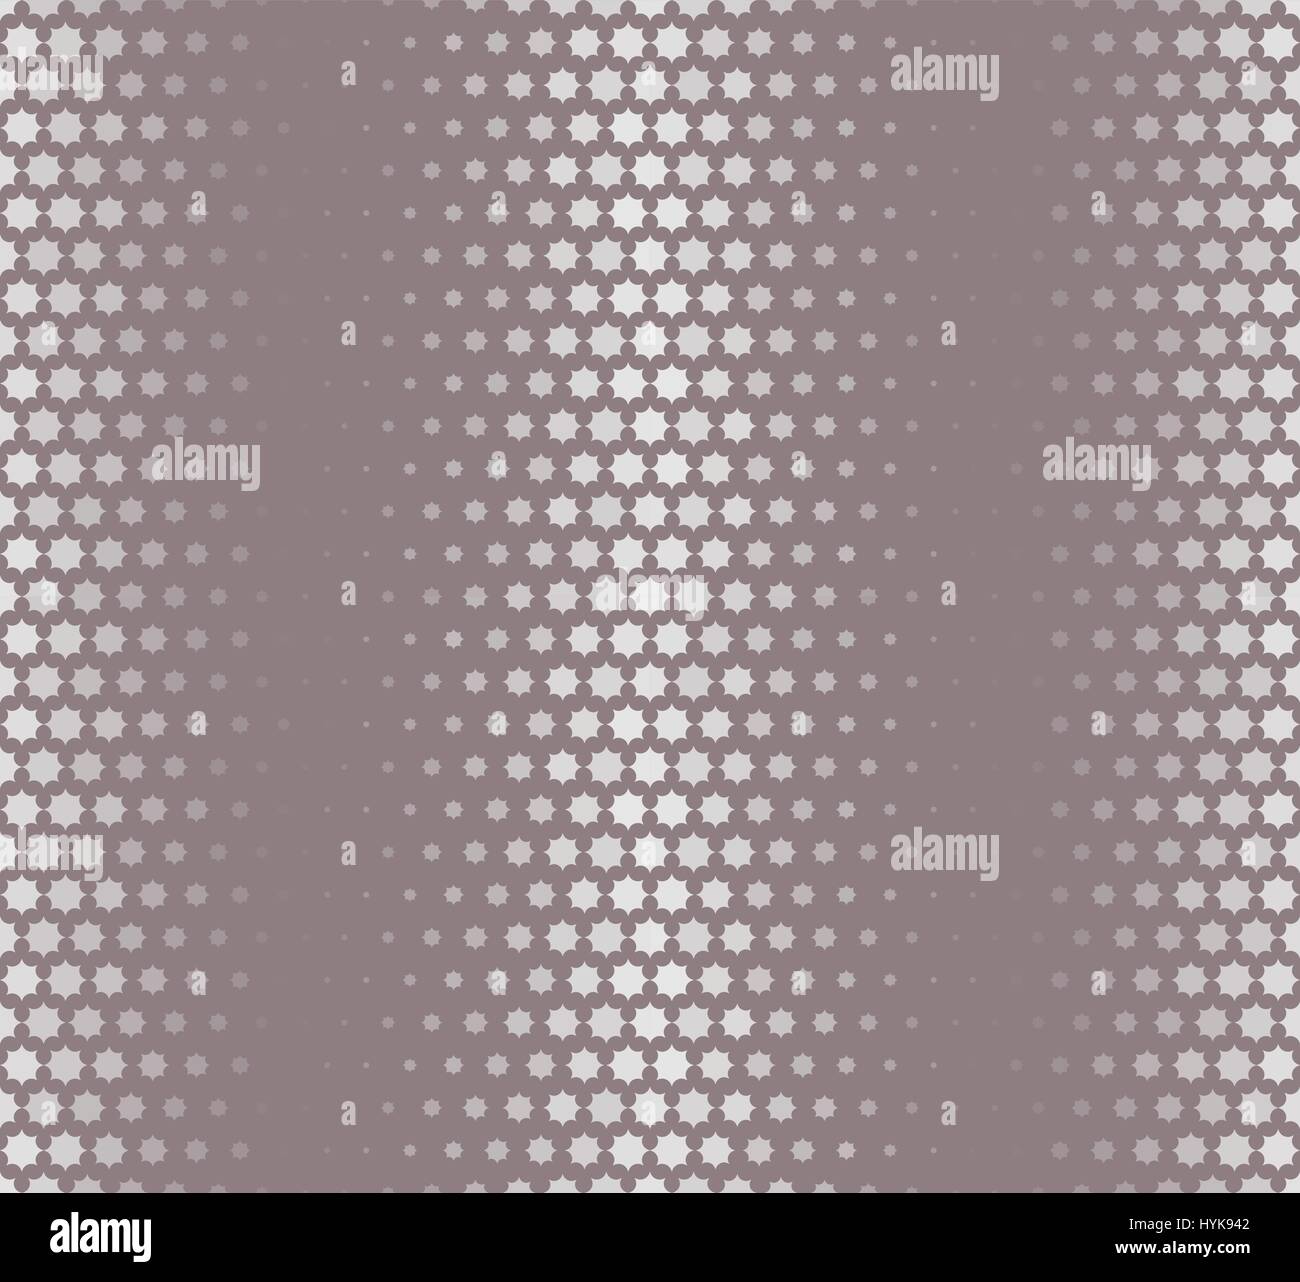 Isolierte abstrakt grau sternförmigen Muster, nahtlose Textur-Vektor-illustration Stock Vektor